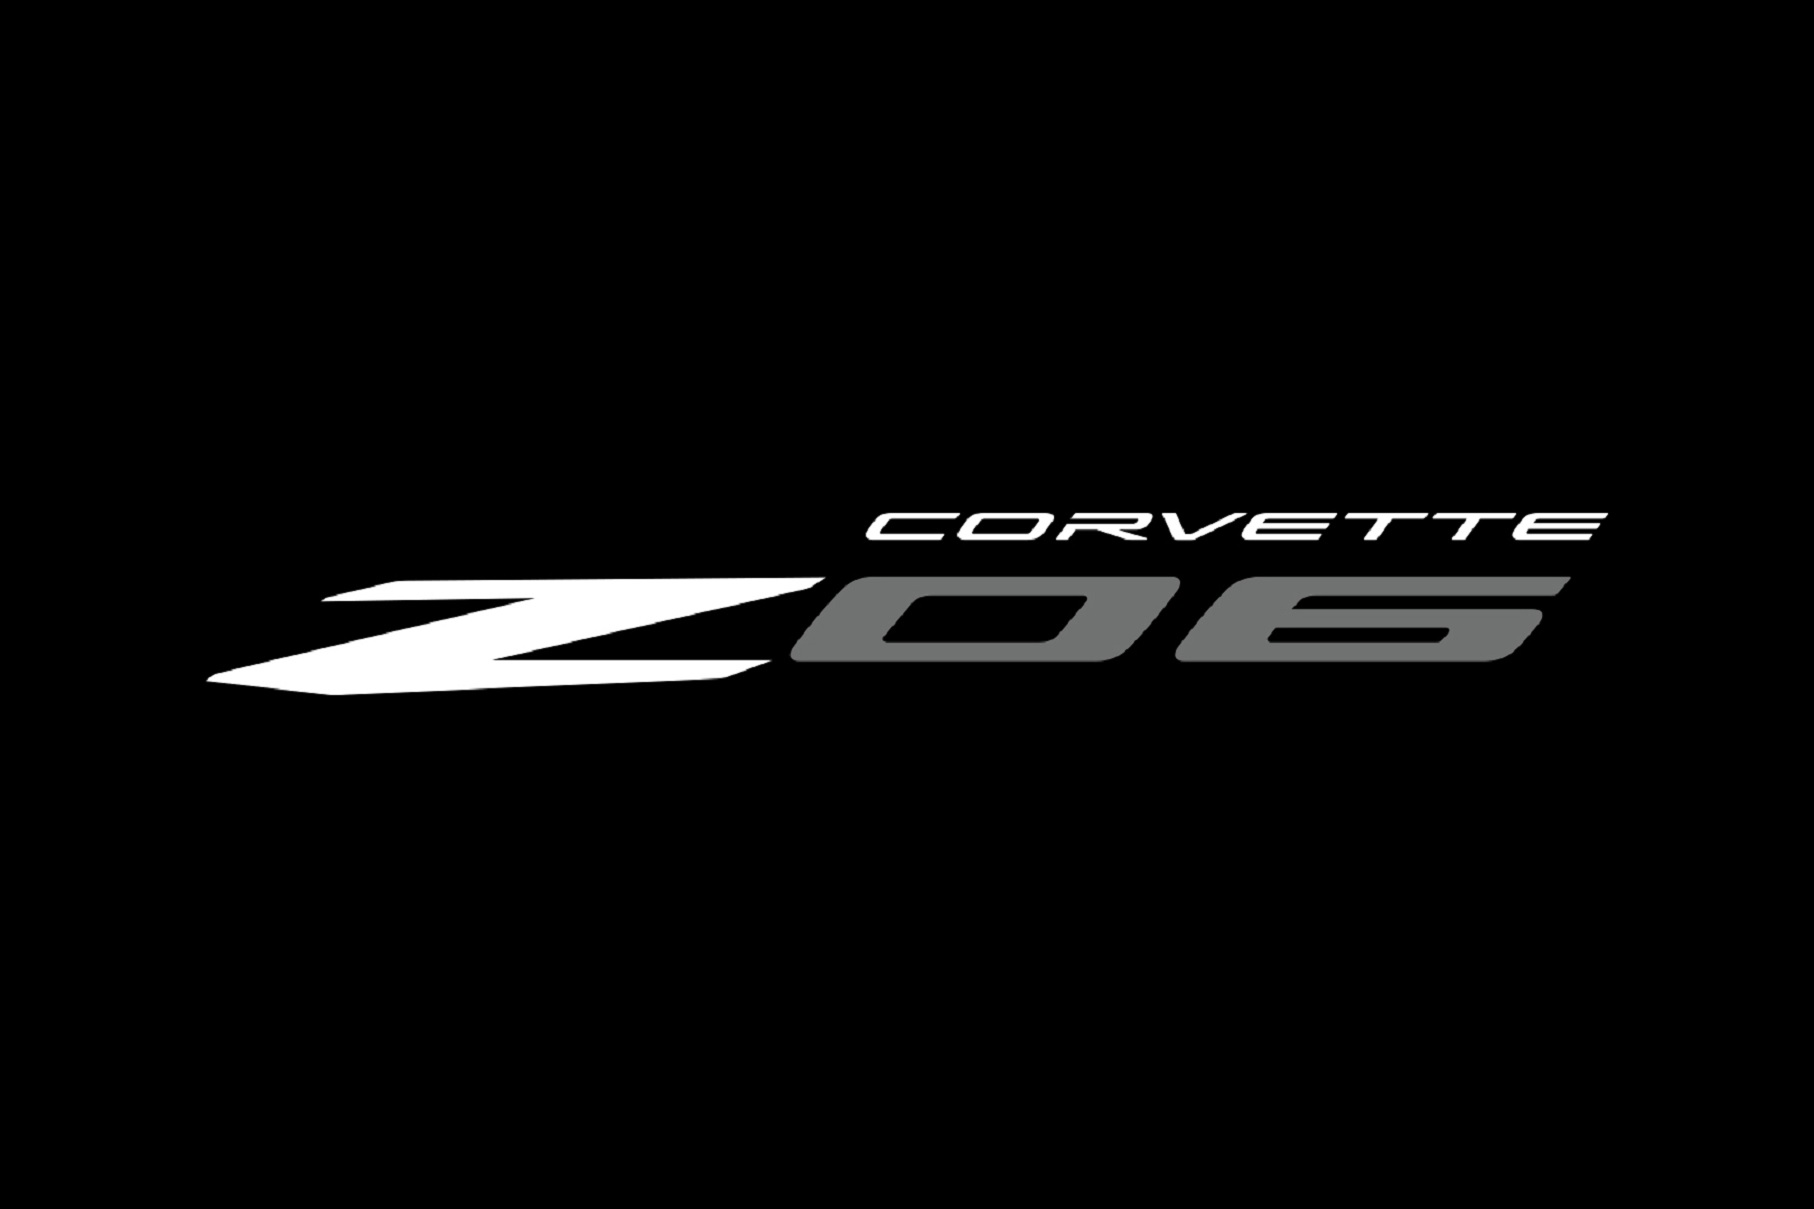 The white-and-gray 2023 Chevrolet Corvette Z06 logo